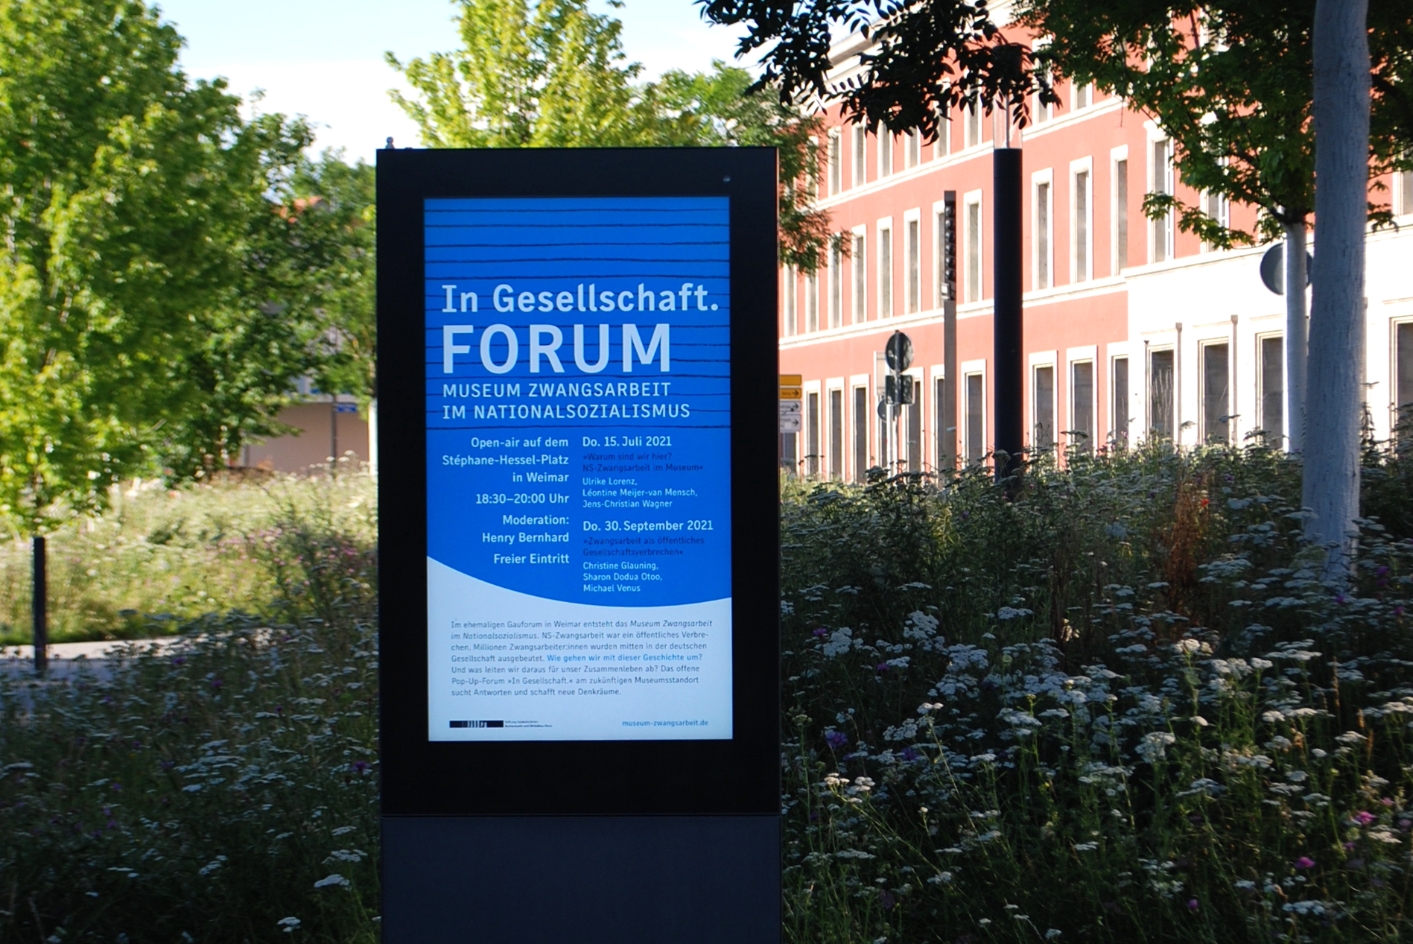 Zu sehen ist das Plakat für das Forum "In Gesellschaft", welches in einem gläserenen Werbeschaukasten in weimar ausgestellt wird.